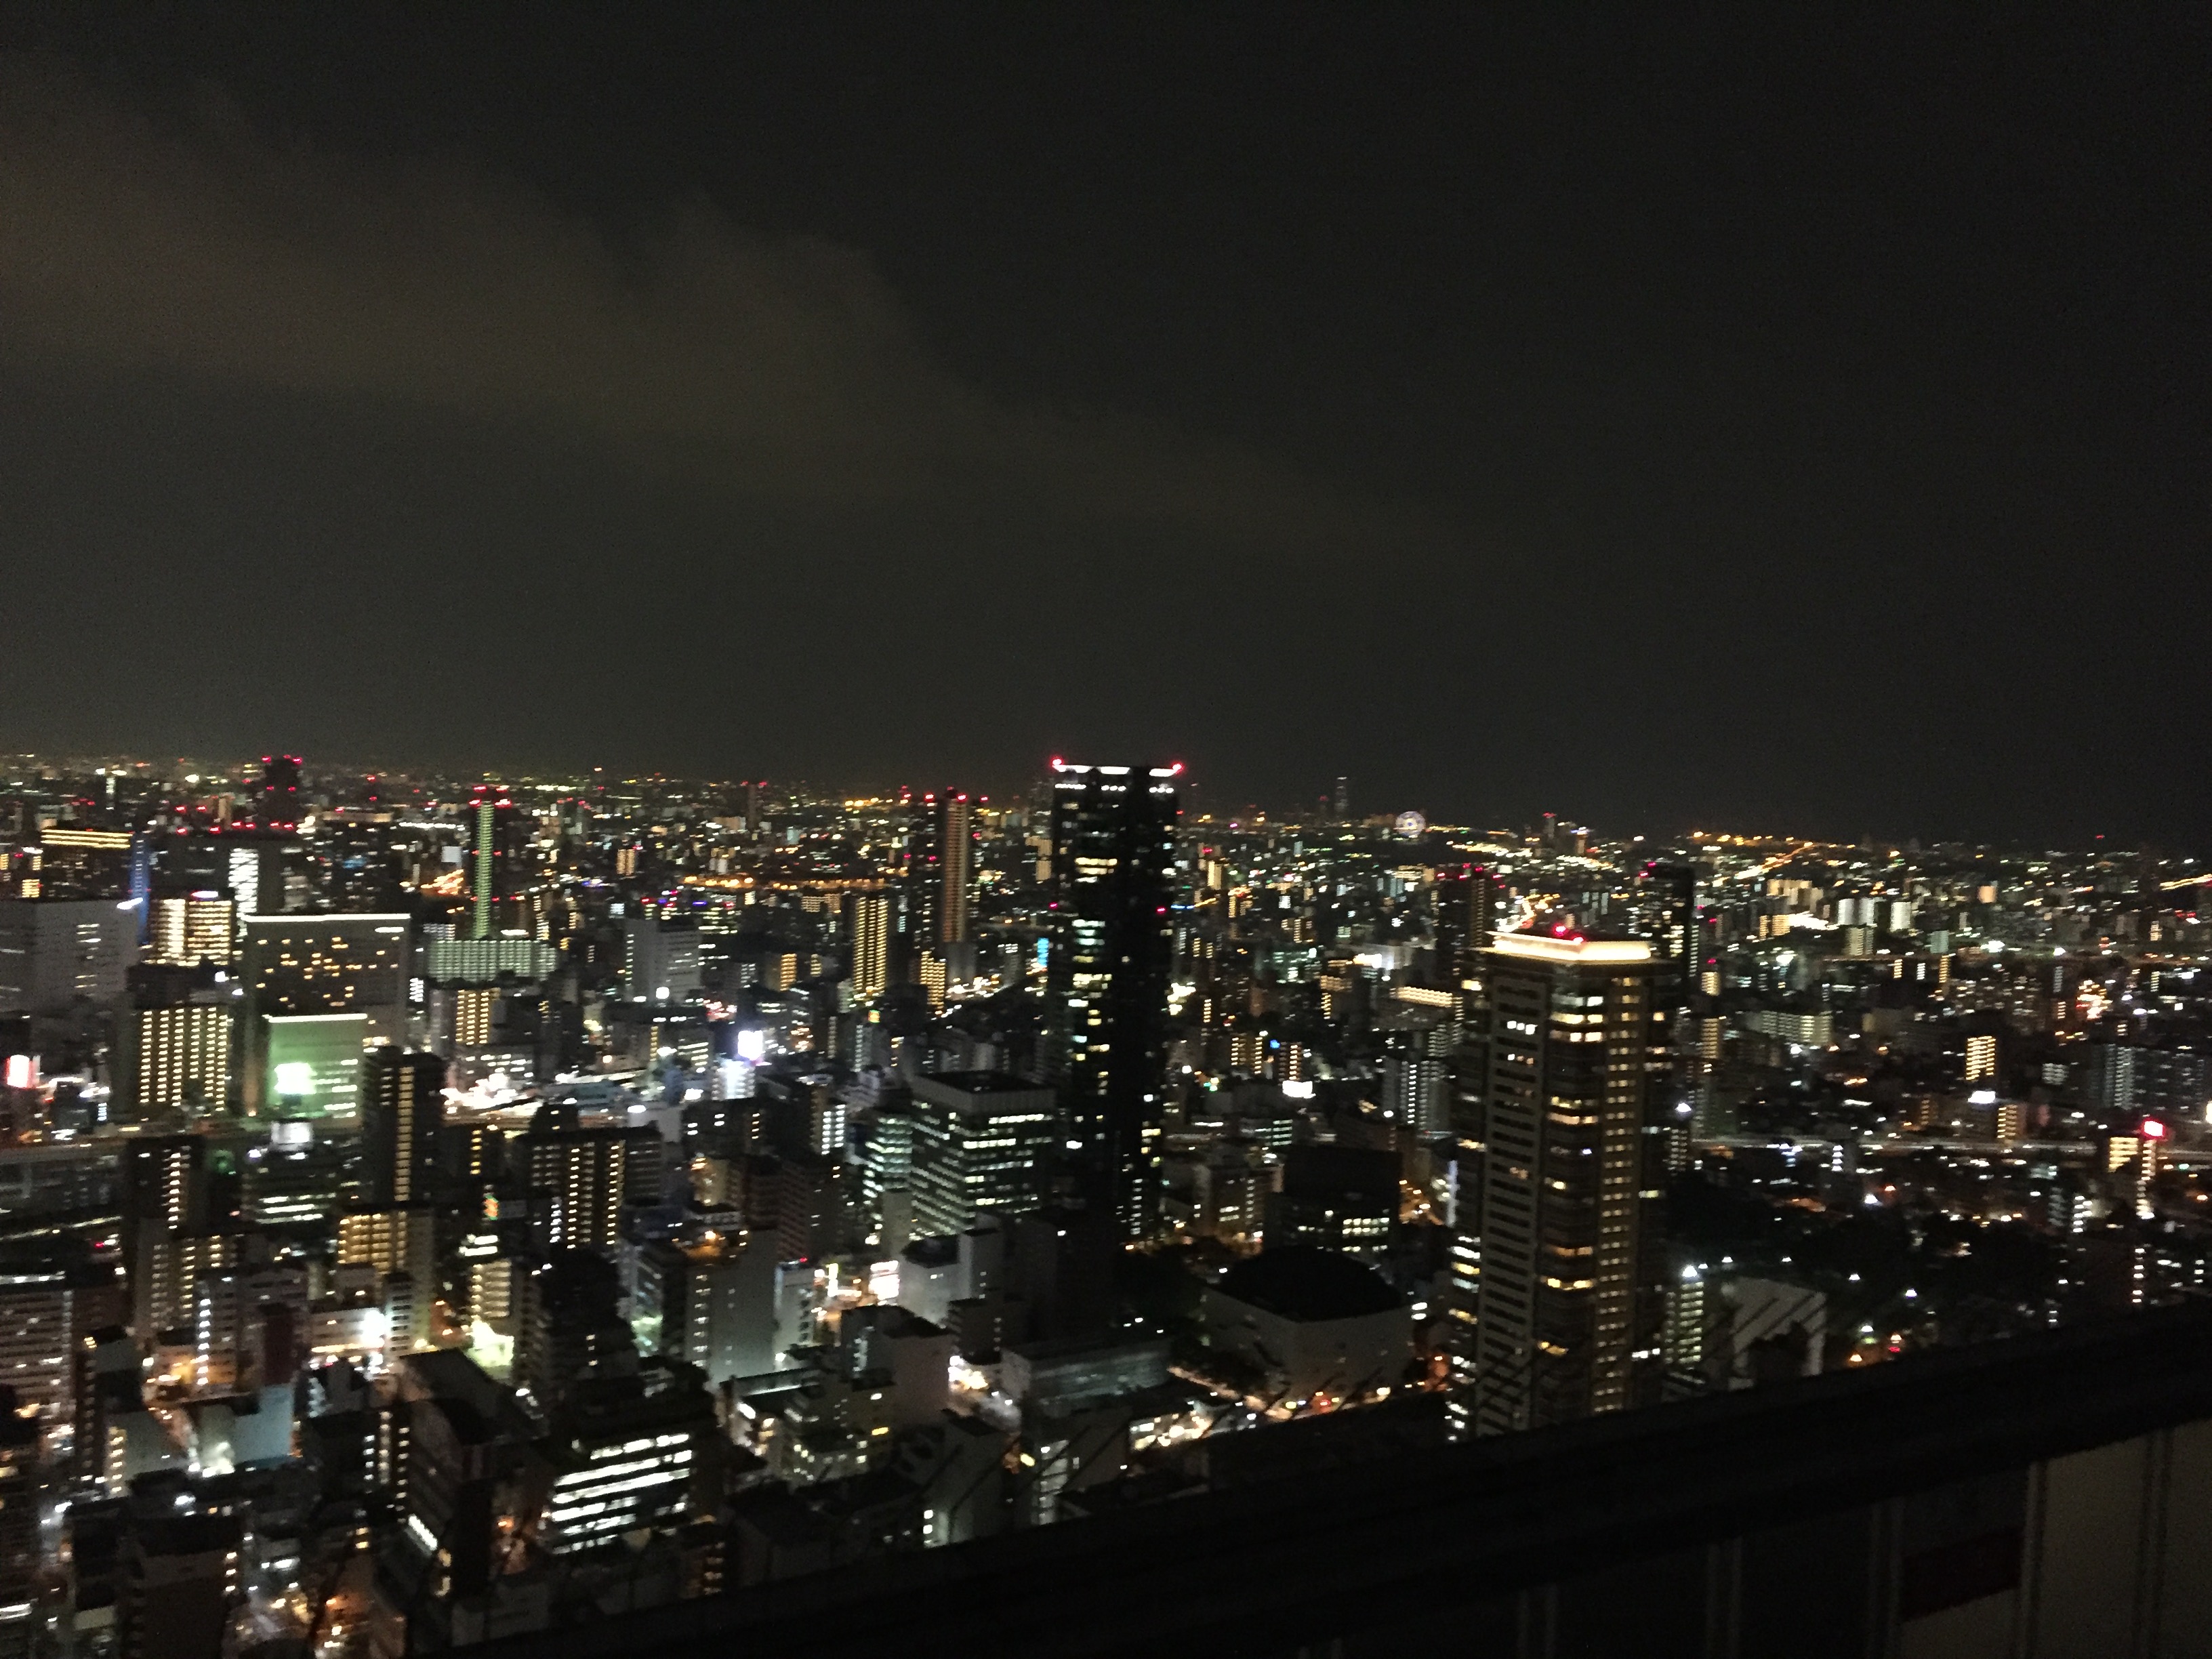 IMG_7588.JPG : 오사카 야경